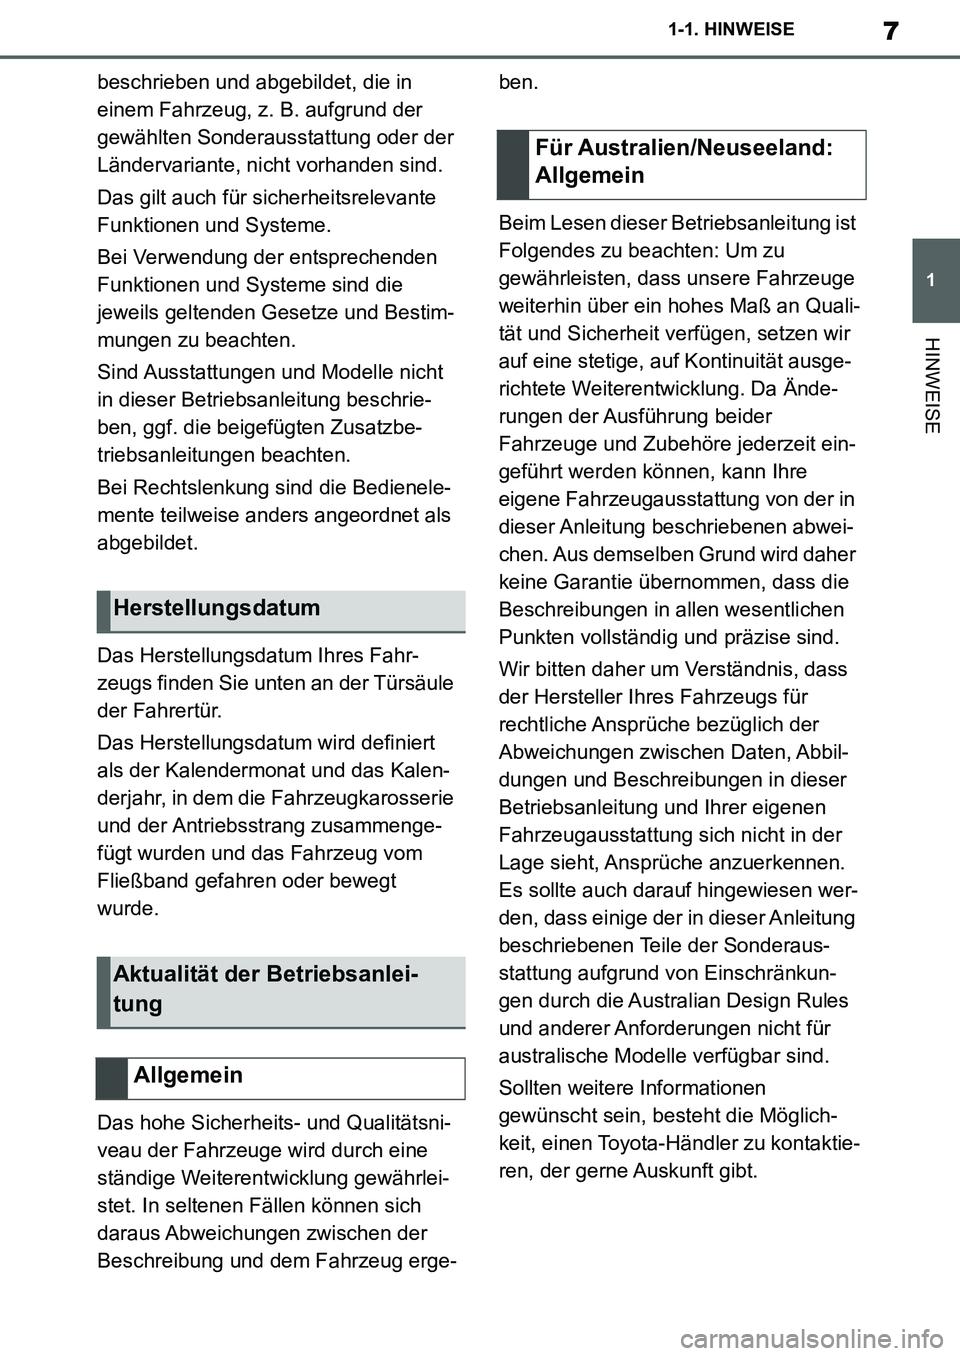 TOYOTA SUPRA 2020  Betriebsanleitungen (in German) 7
1
Supra Owners Manual_EM
1-1. HINWEISE
HINWEISE
beschrieben und abgebildet, die in 
einem Fahrzeug, z. B. aufgrund der 
gewählten Sonderausstattung oder der 
Ländervariante, nicht vorhanden sind.